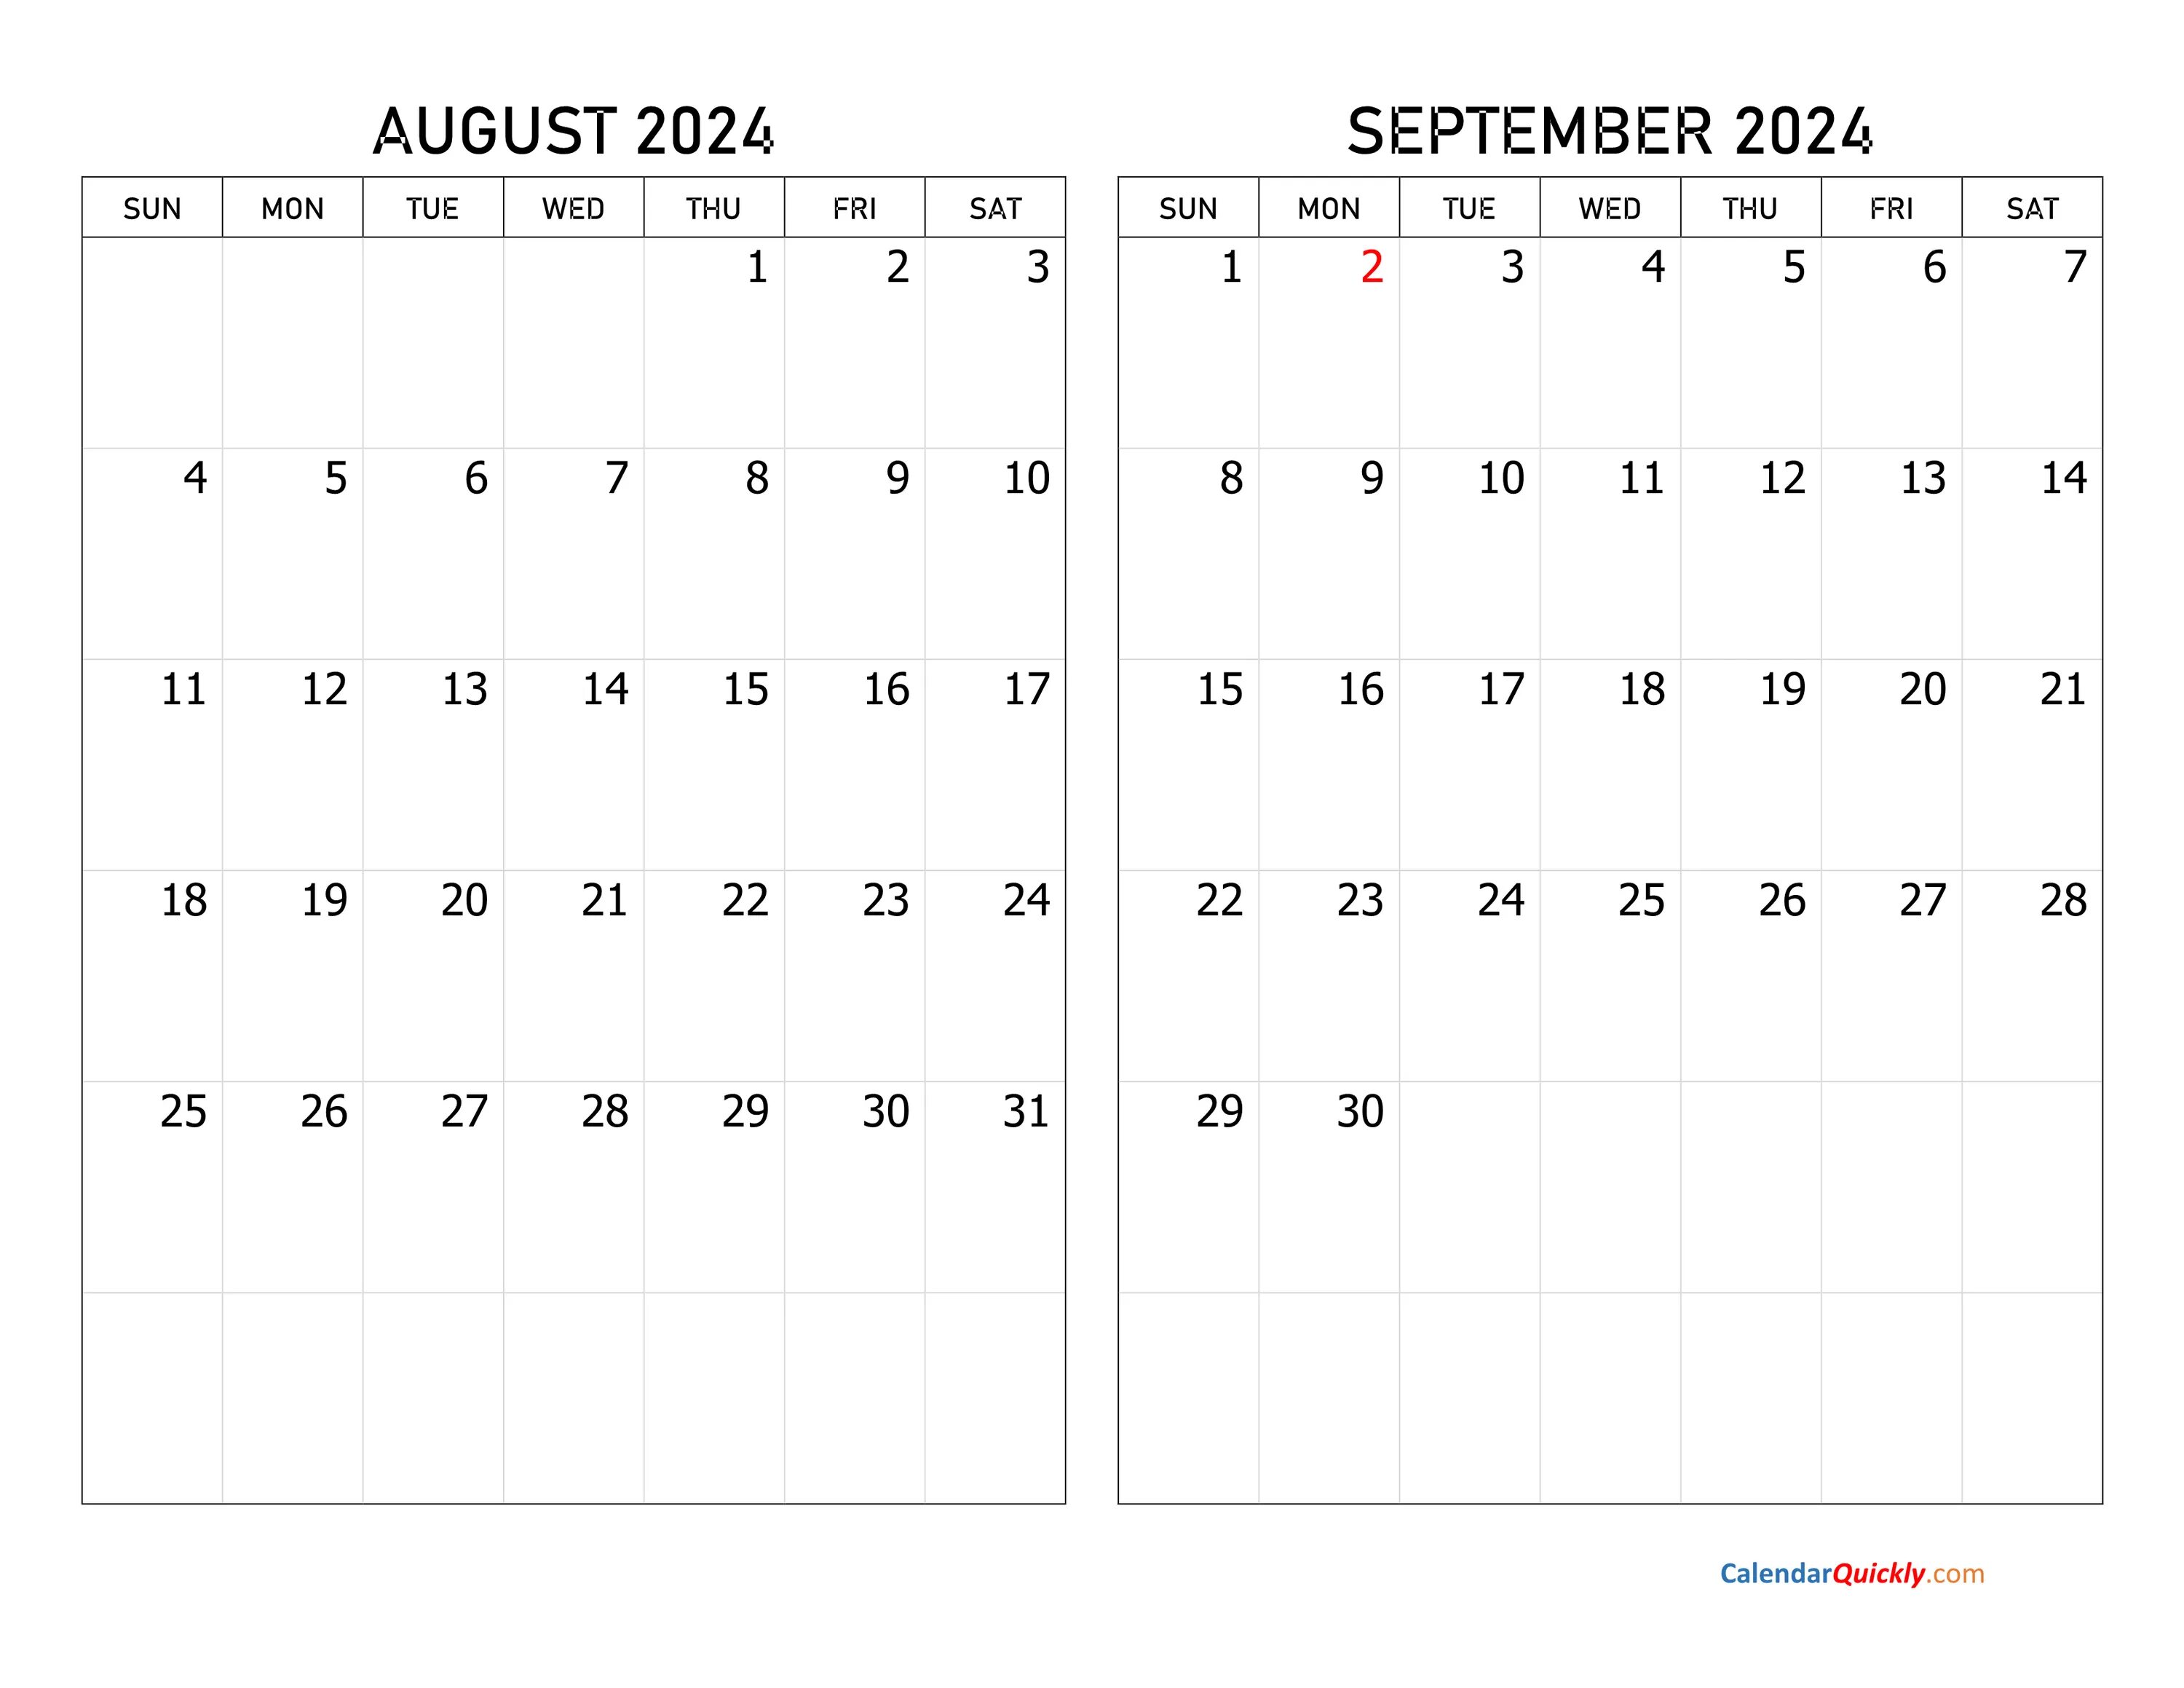 Календарь декабрь 2024 года. Календарь декабрь 2022. Календарь сентябрь октябрь 2022. Календарь октябрь ноябрь 2022. Календарь декабрь 2022 январь 2023.